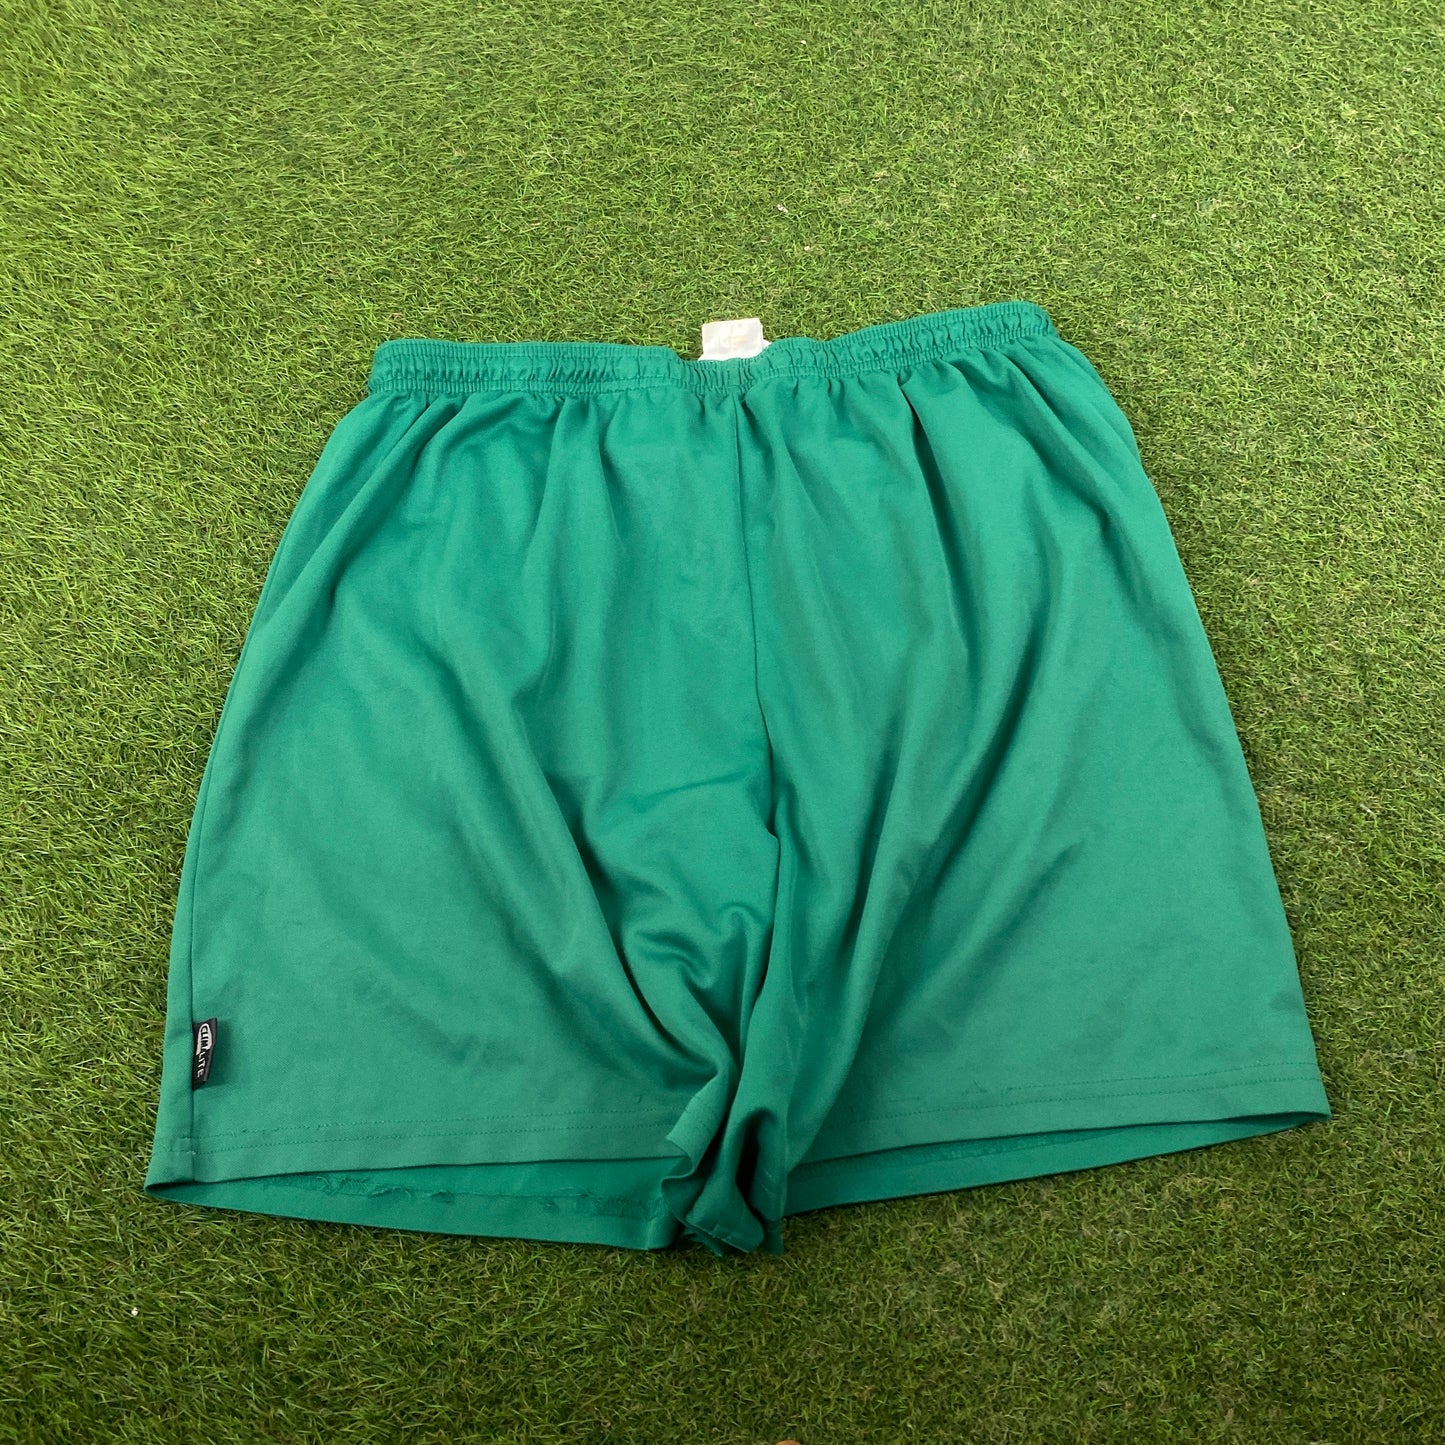 90s Adidas Football Shorts Green XL